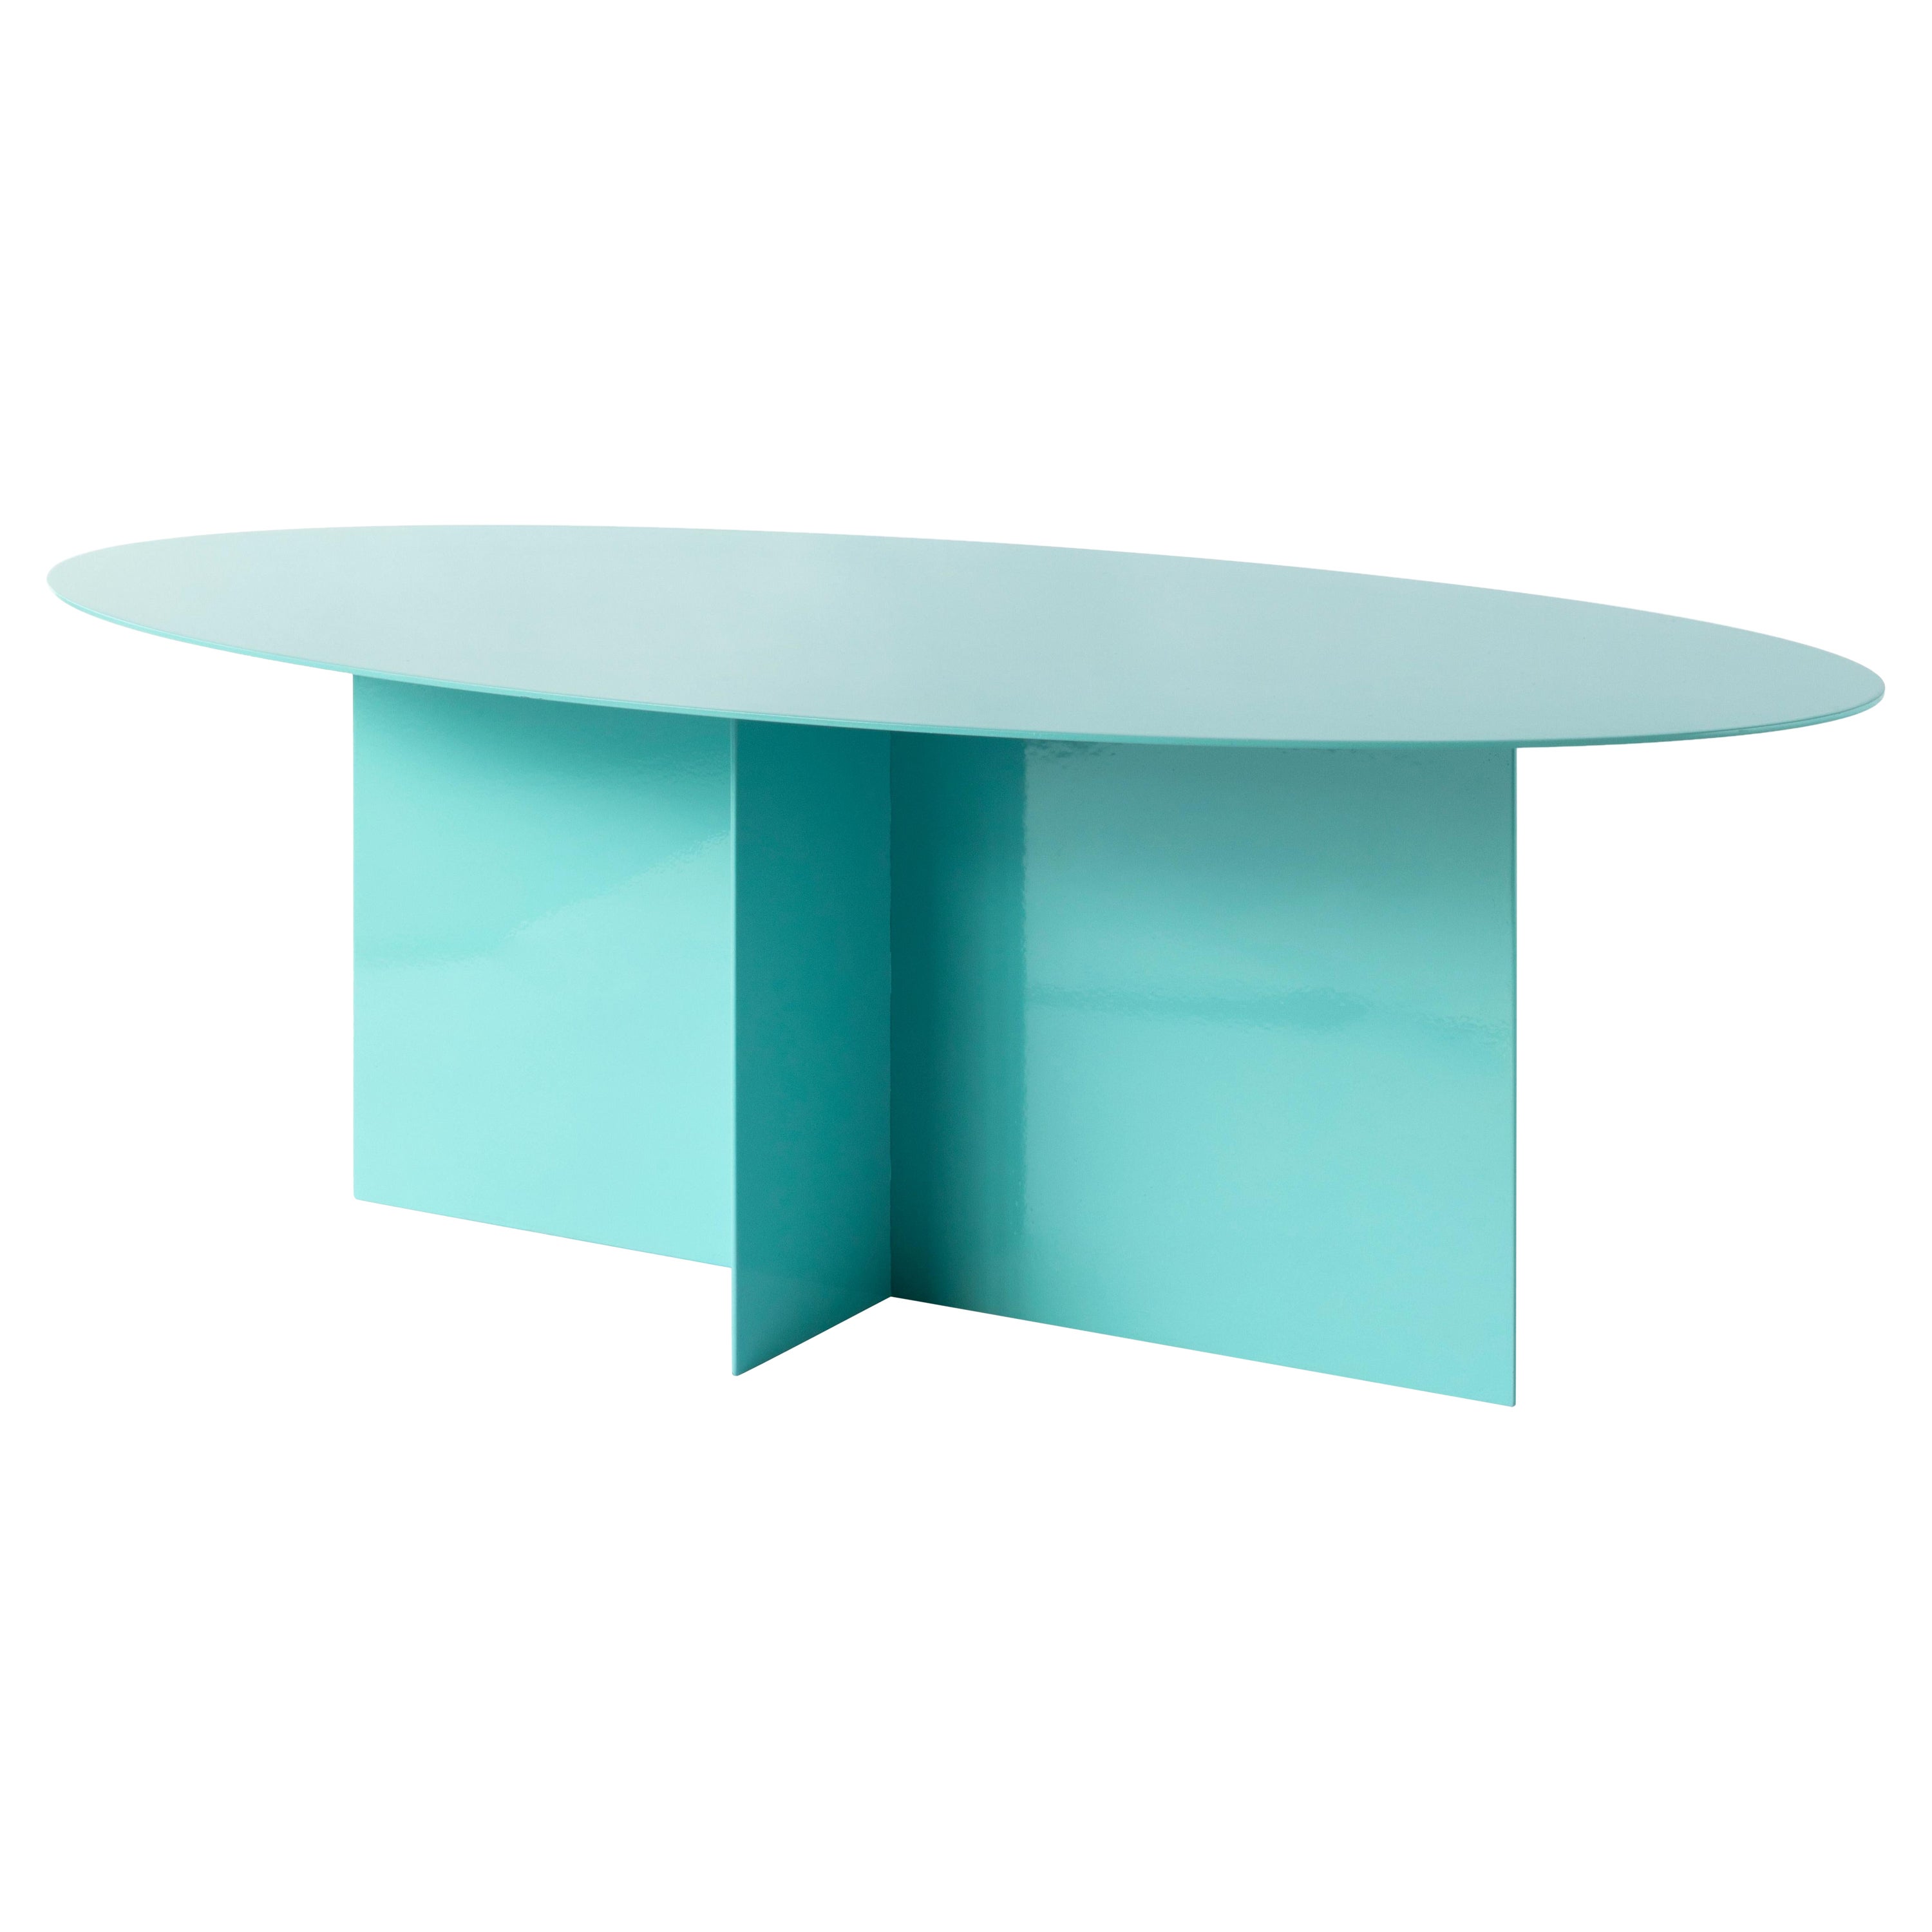 Table basse Across ovale bleu clair par Secondome Edizioni